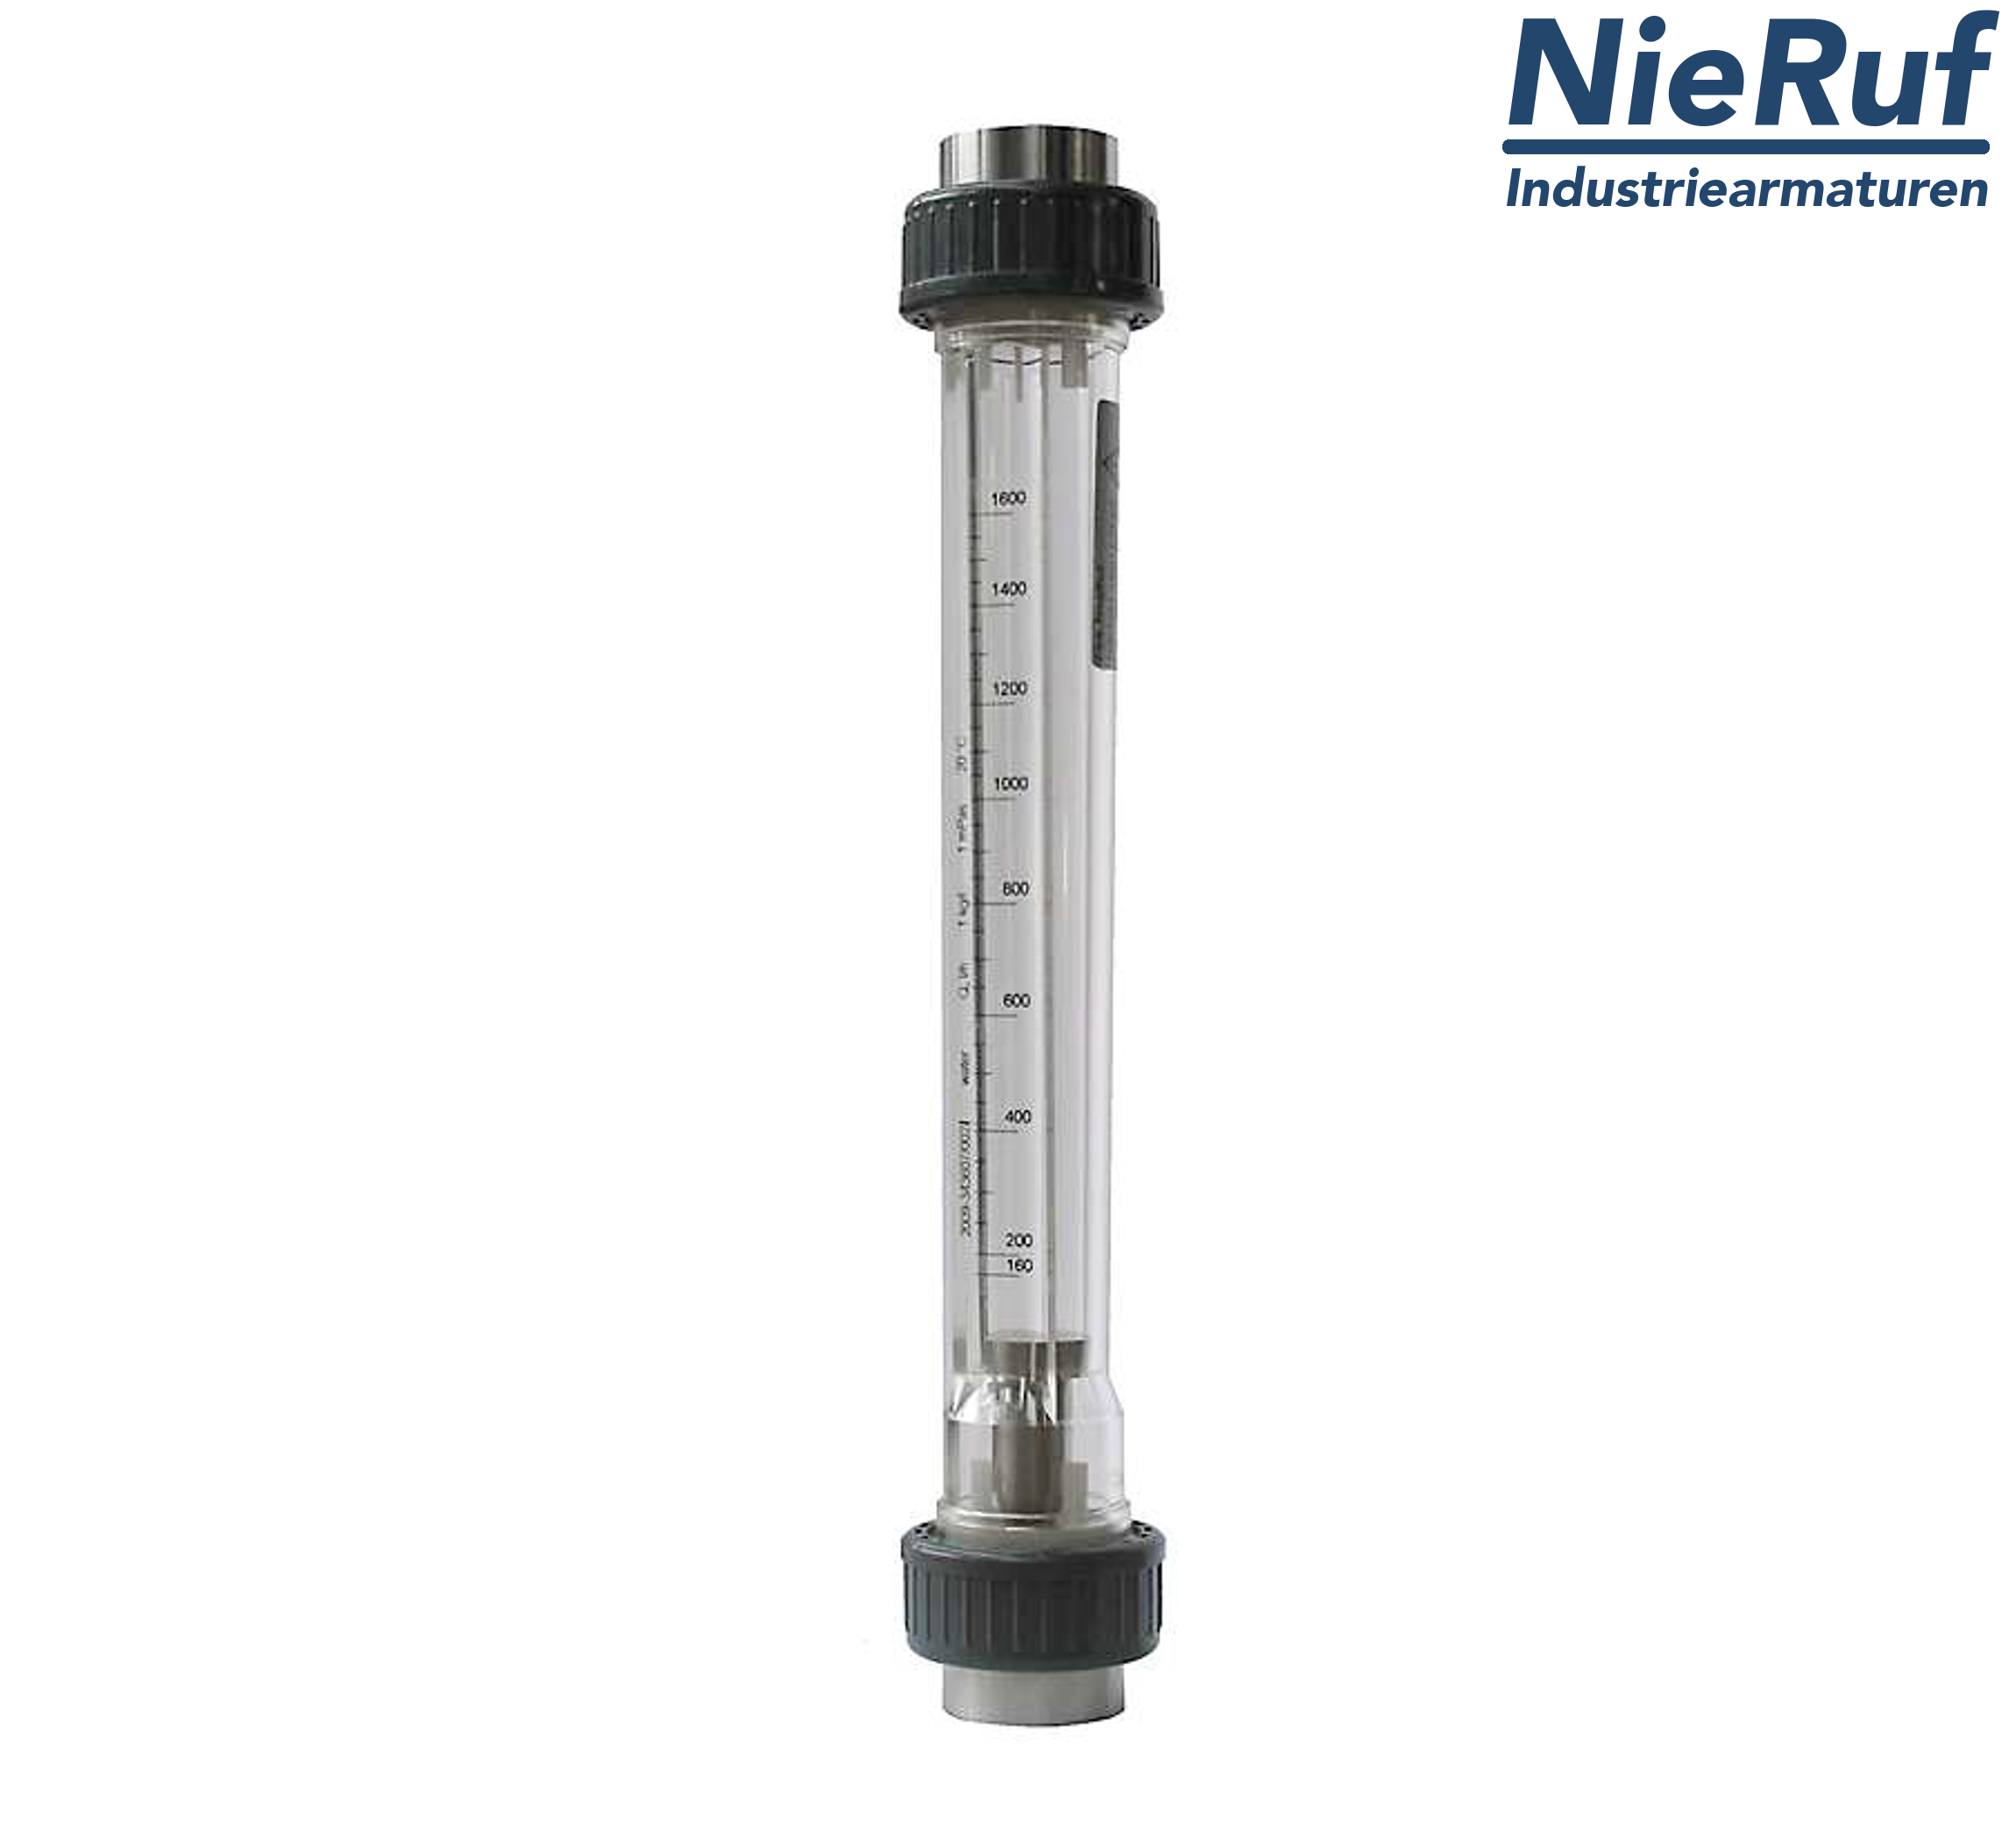 Variable area flowmeter 1" Inch NPT 1600.0 - 16000 l/h air NBR